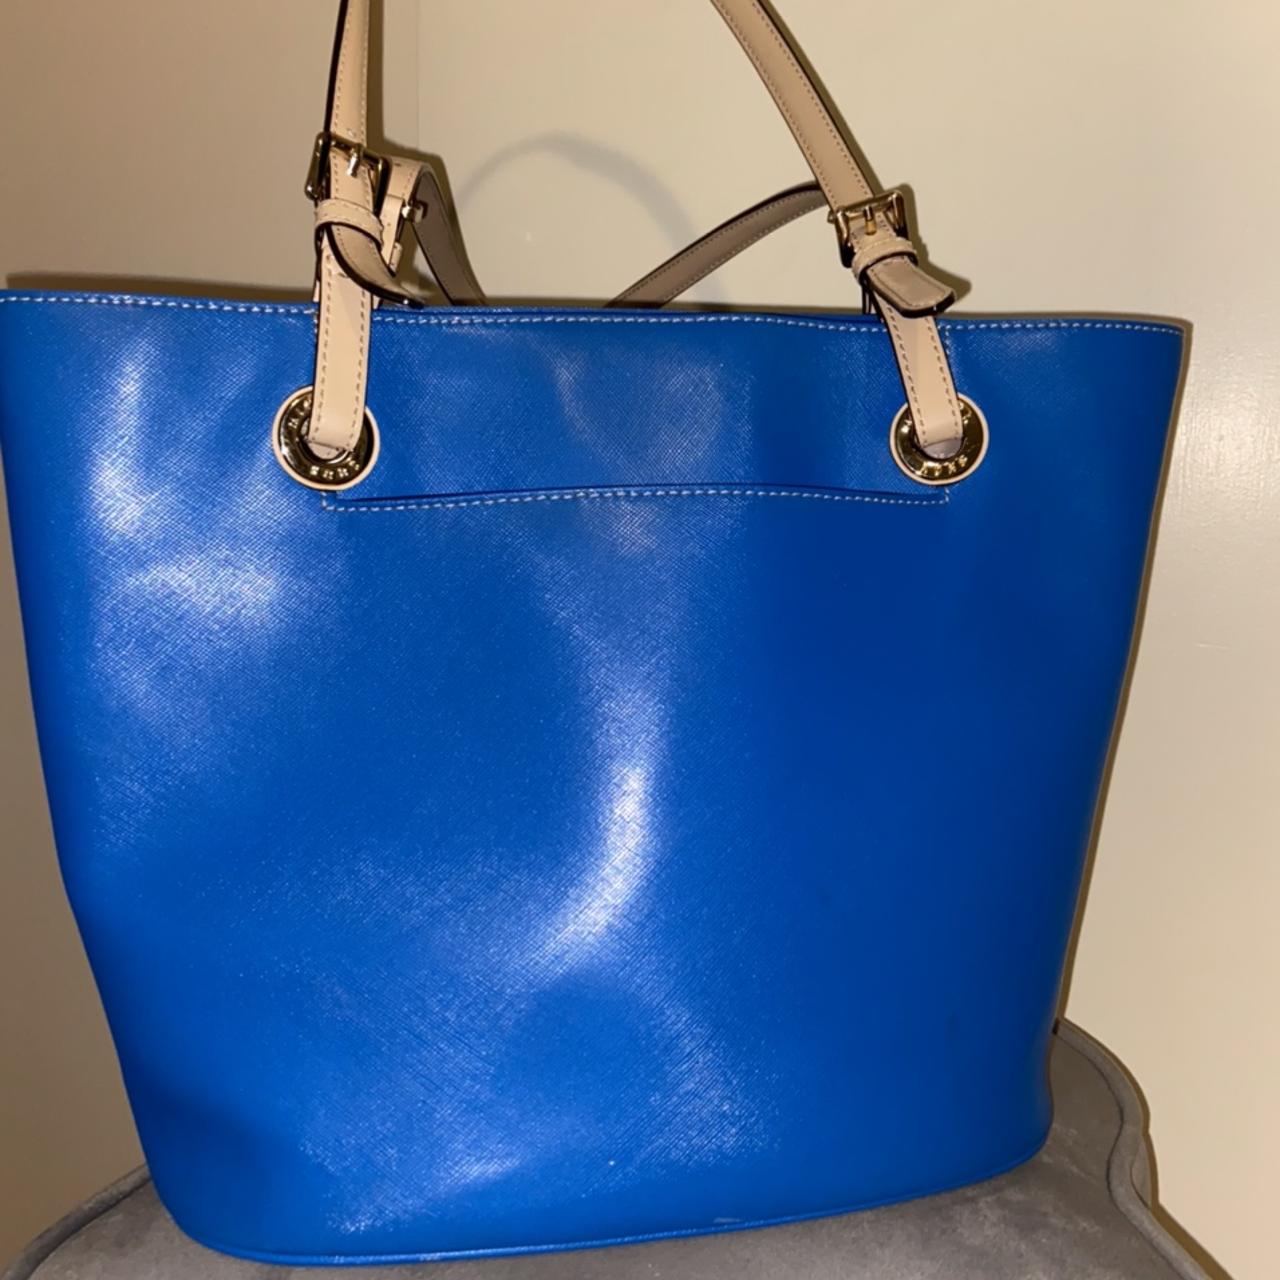 Michael Kors Women's Blue and Gold Bag | Depop